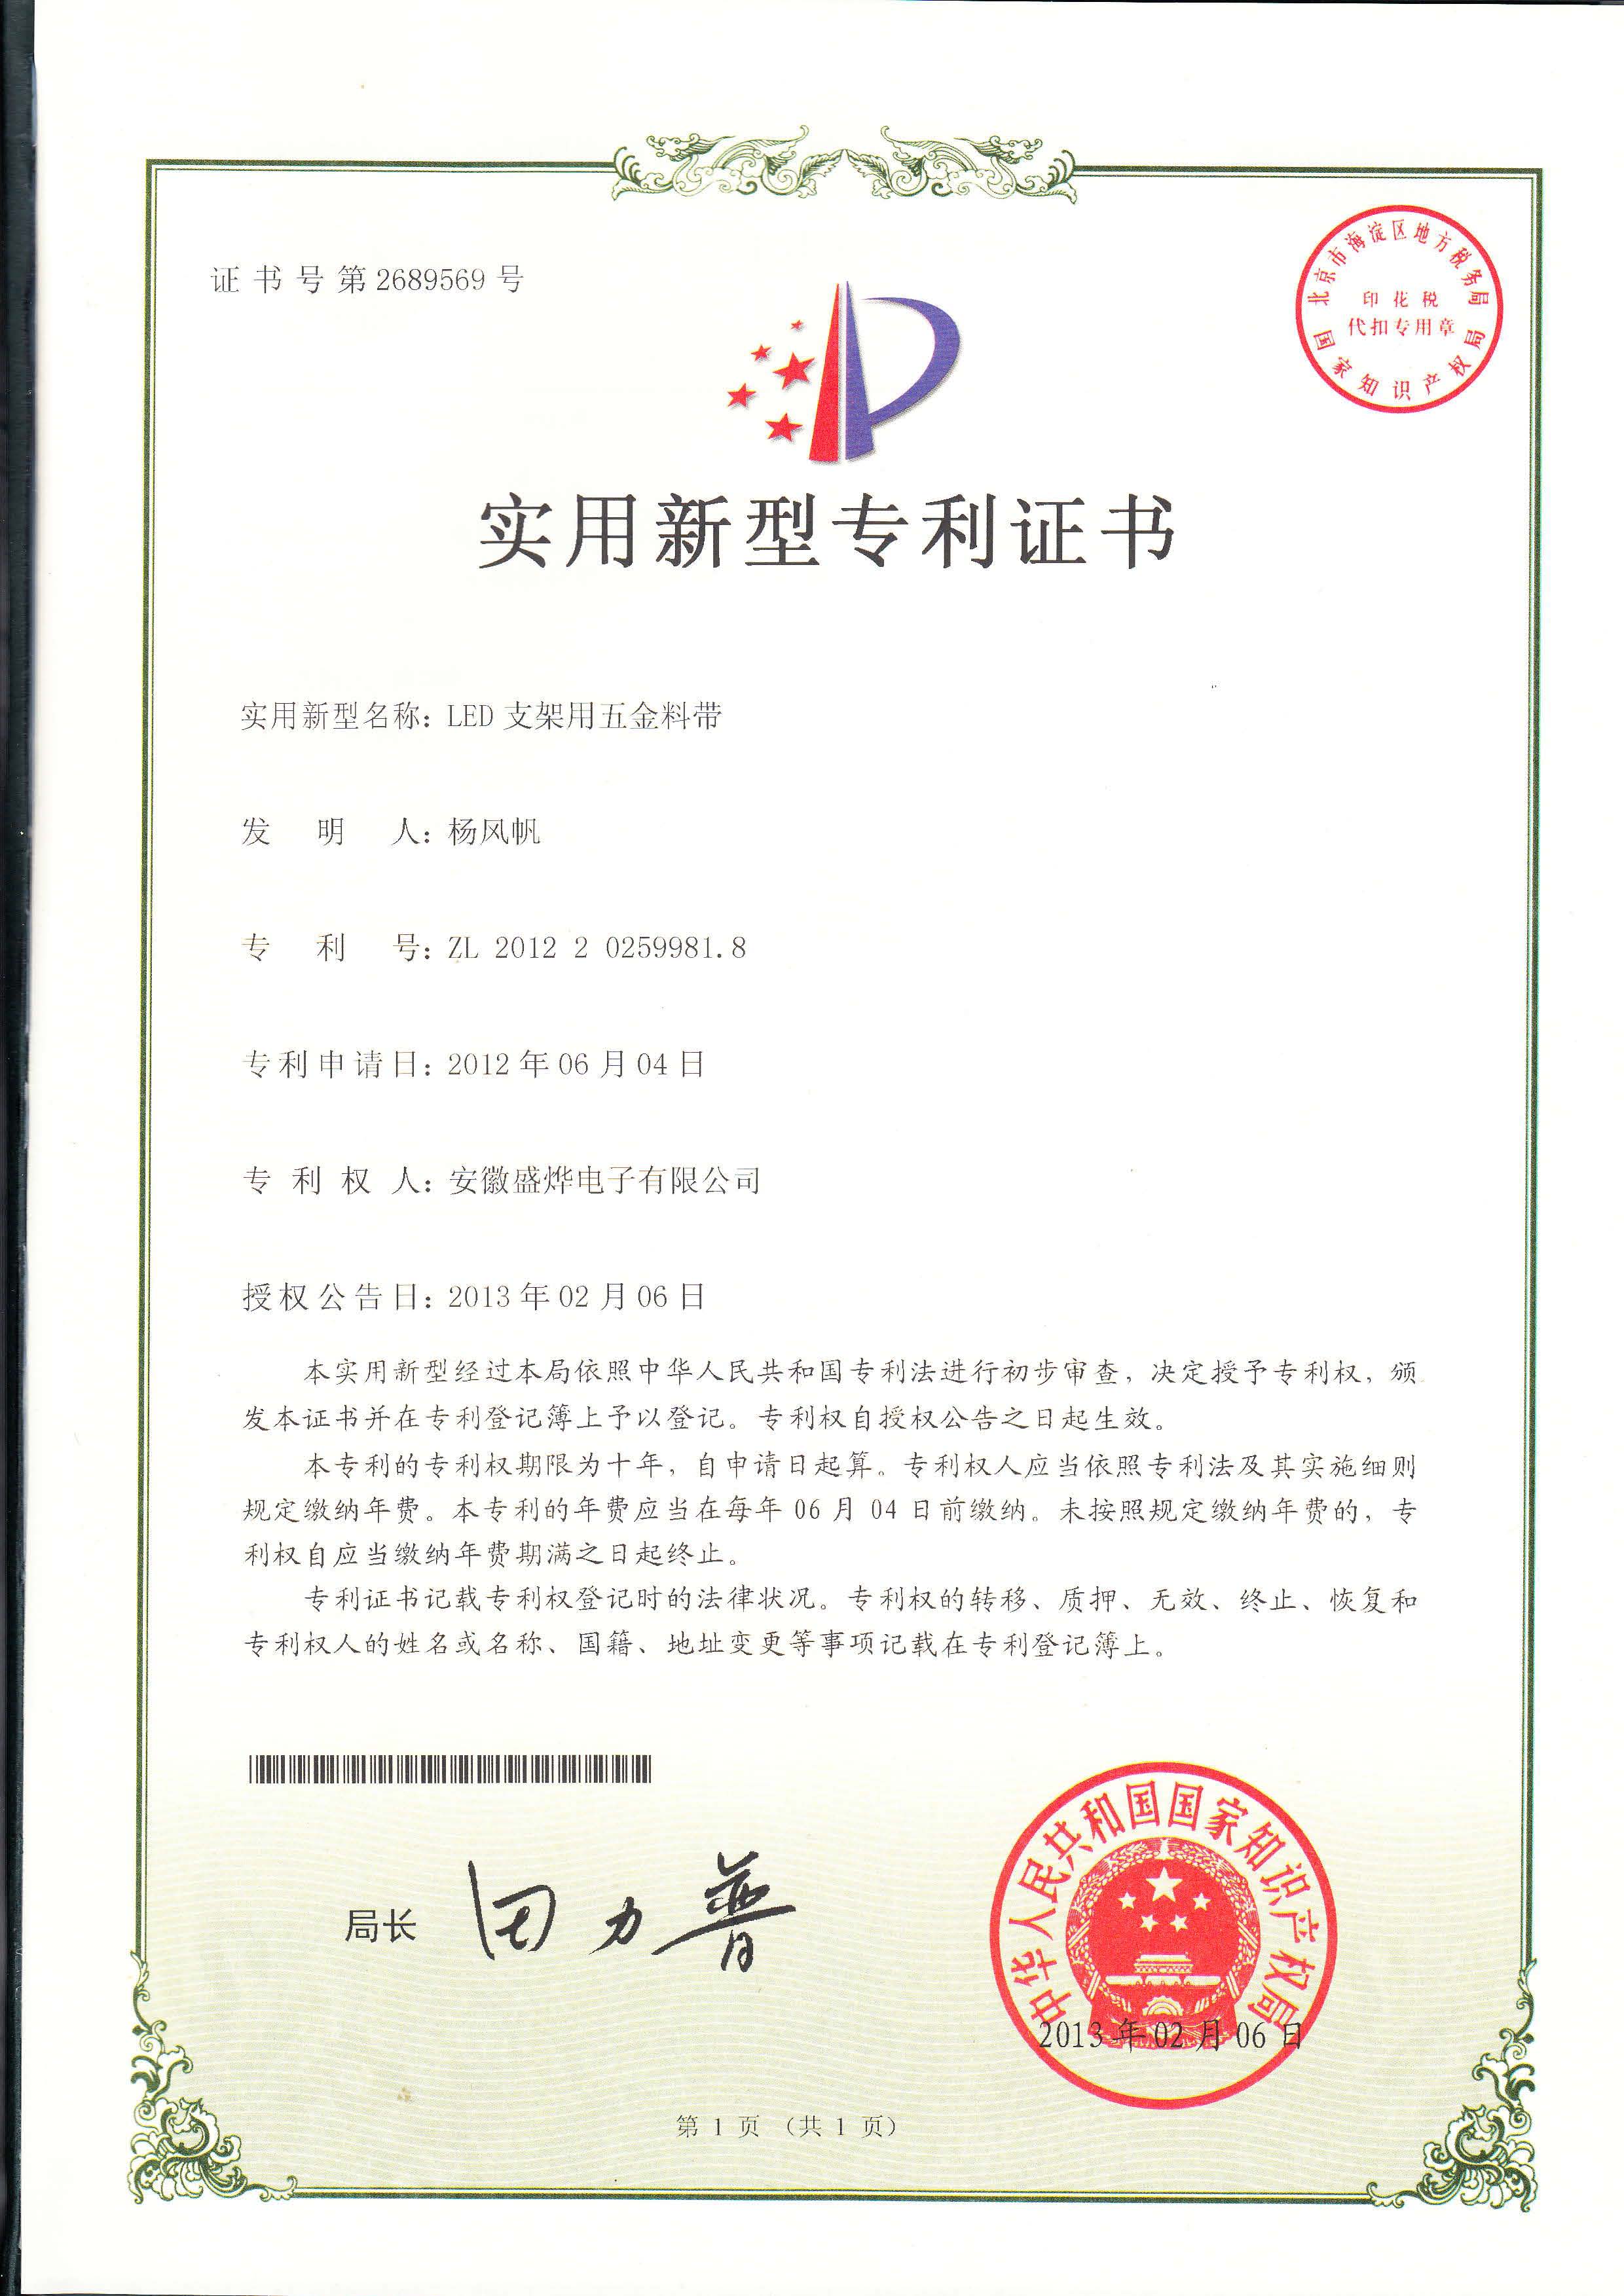 专利号ZL2012 2 0259981.8